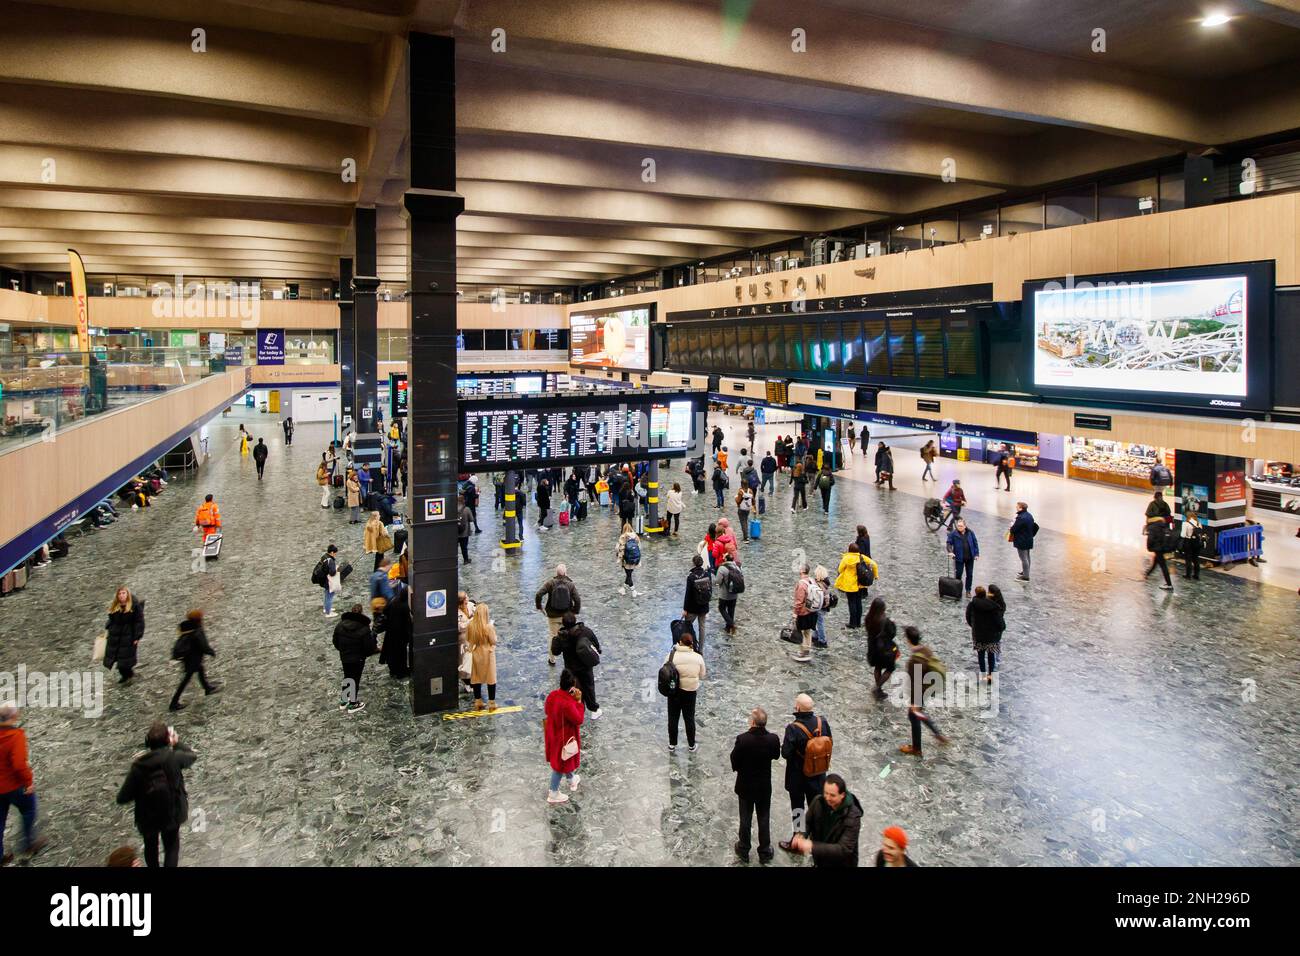 L'atrio della stazione ferroviaria di Euston. Il corso è stato aggiornato nel 2023 con le schermate informative spostate al centro del corso. Foto Stock